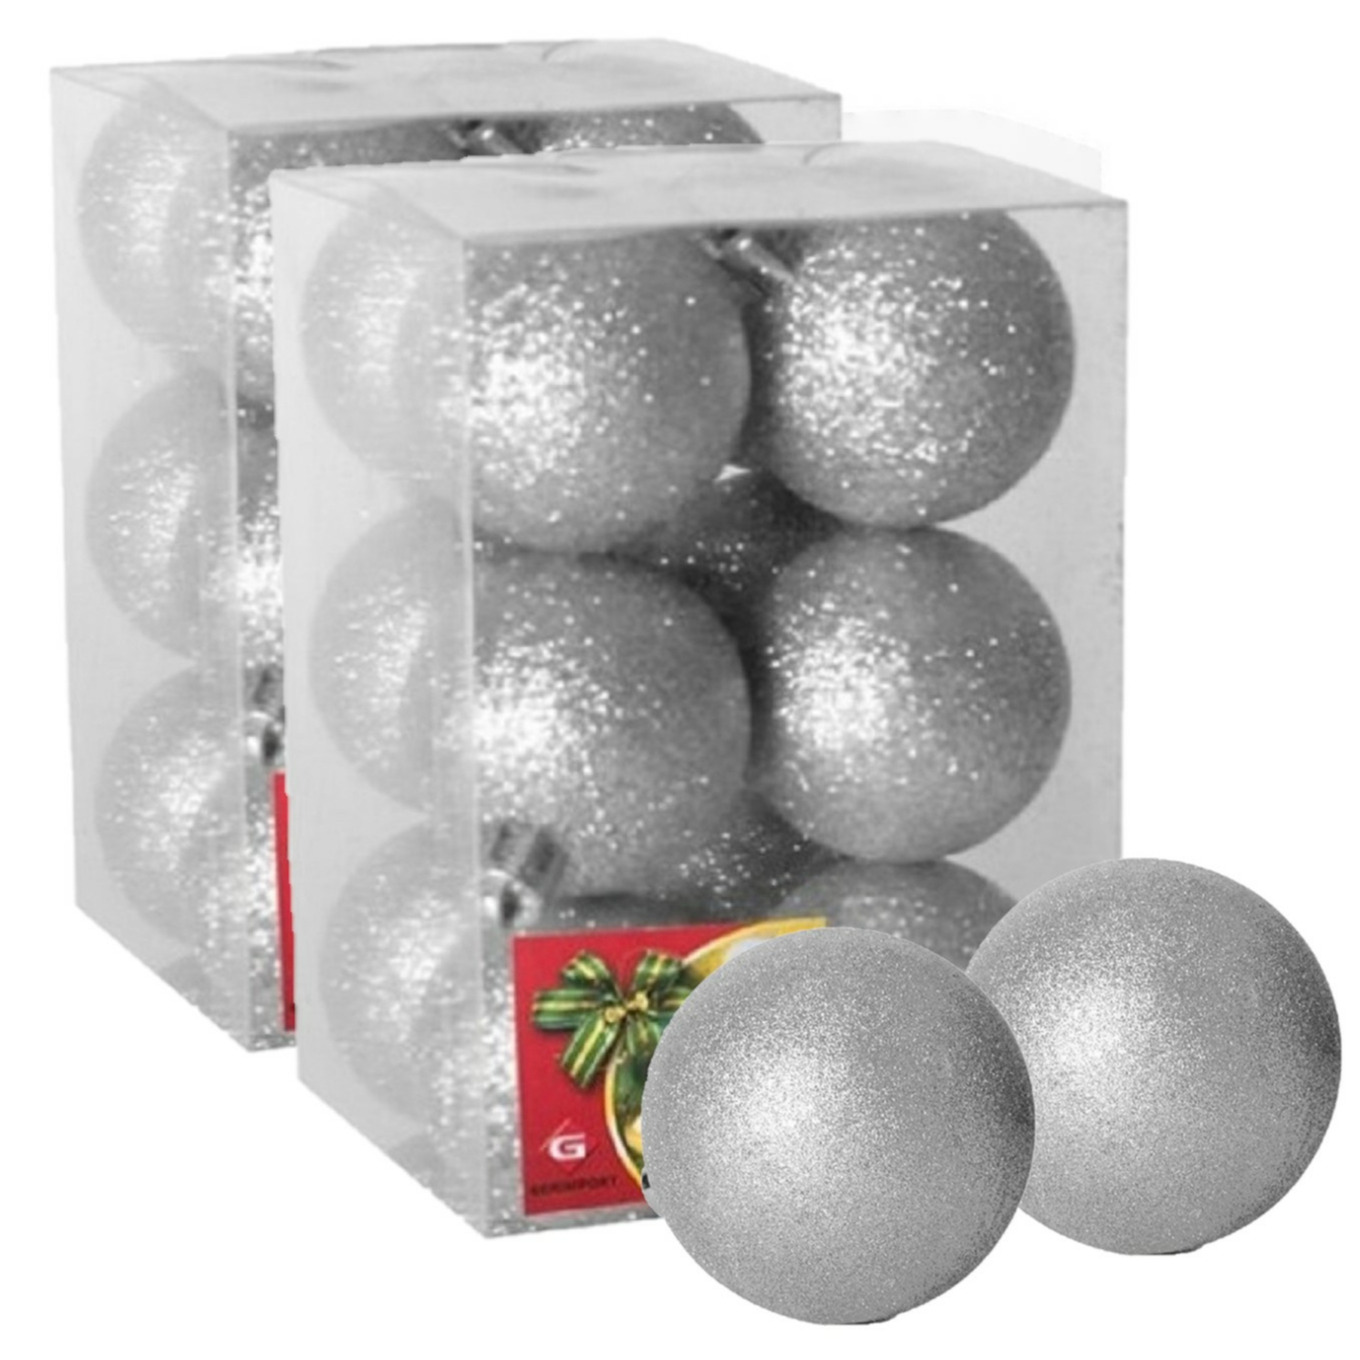 24x stuks kerstballen zilver glitters kunststof 6 cm